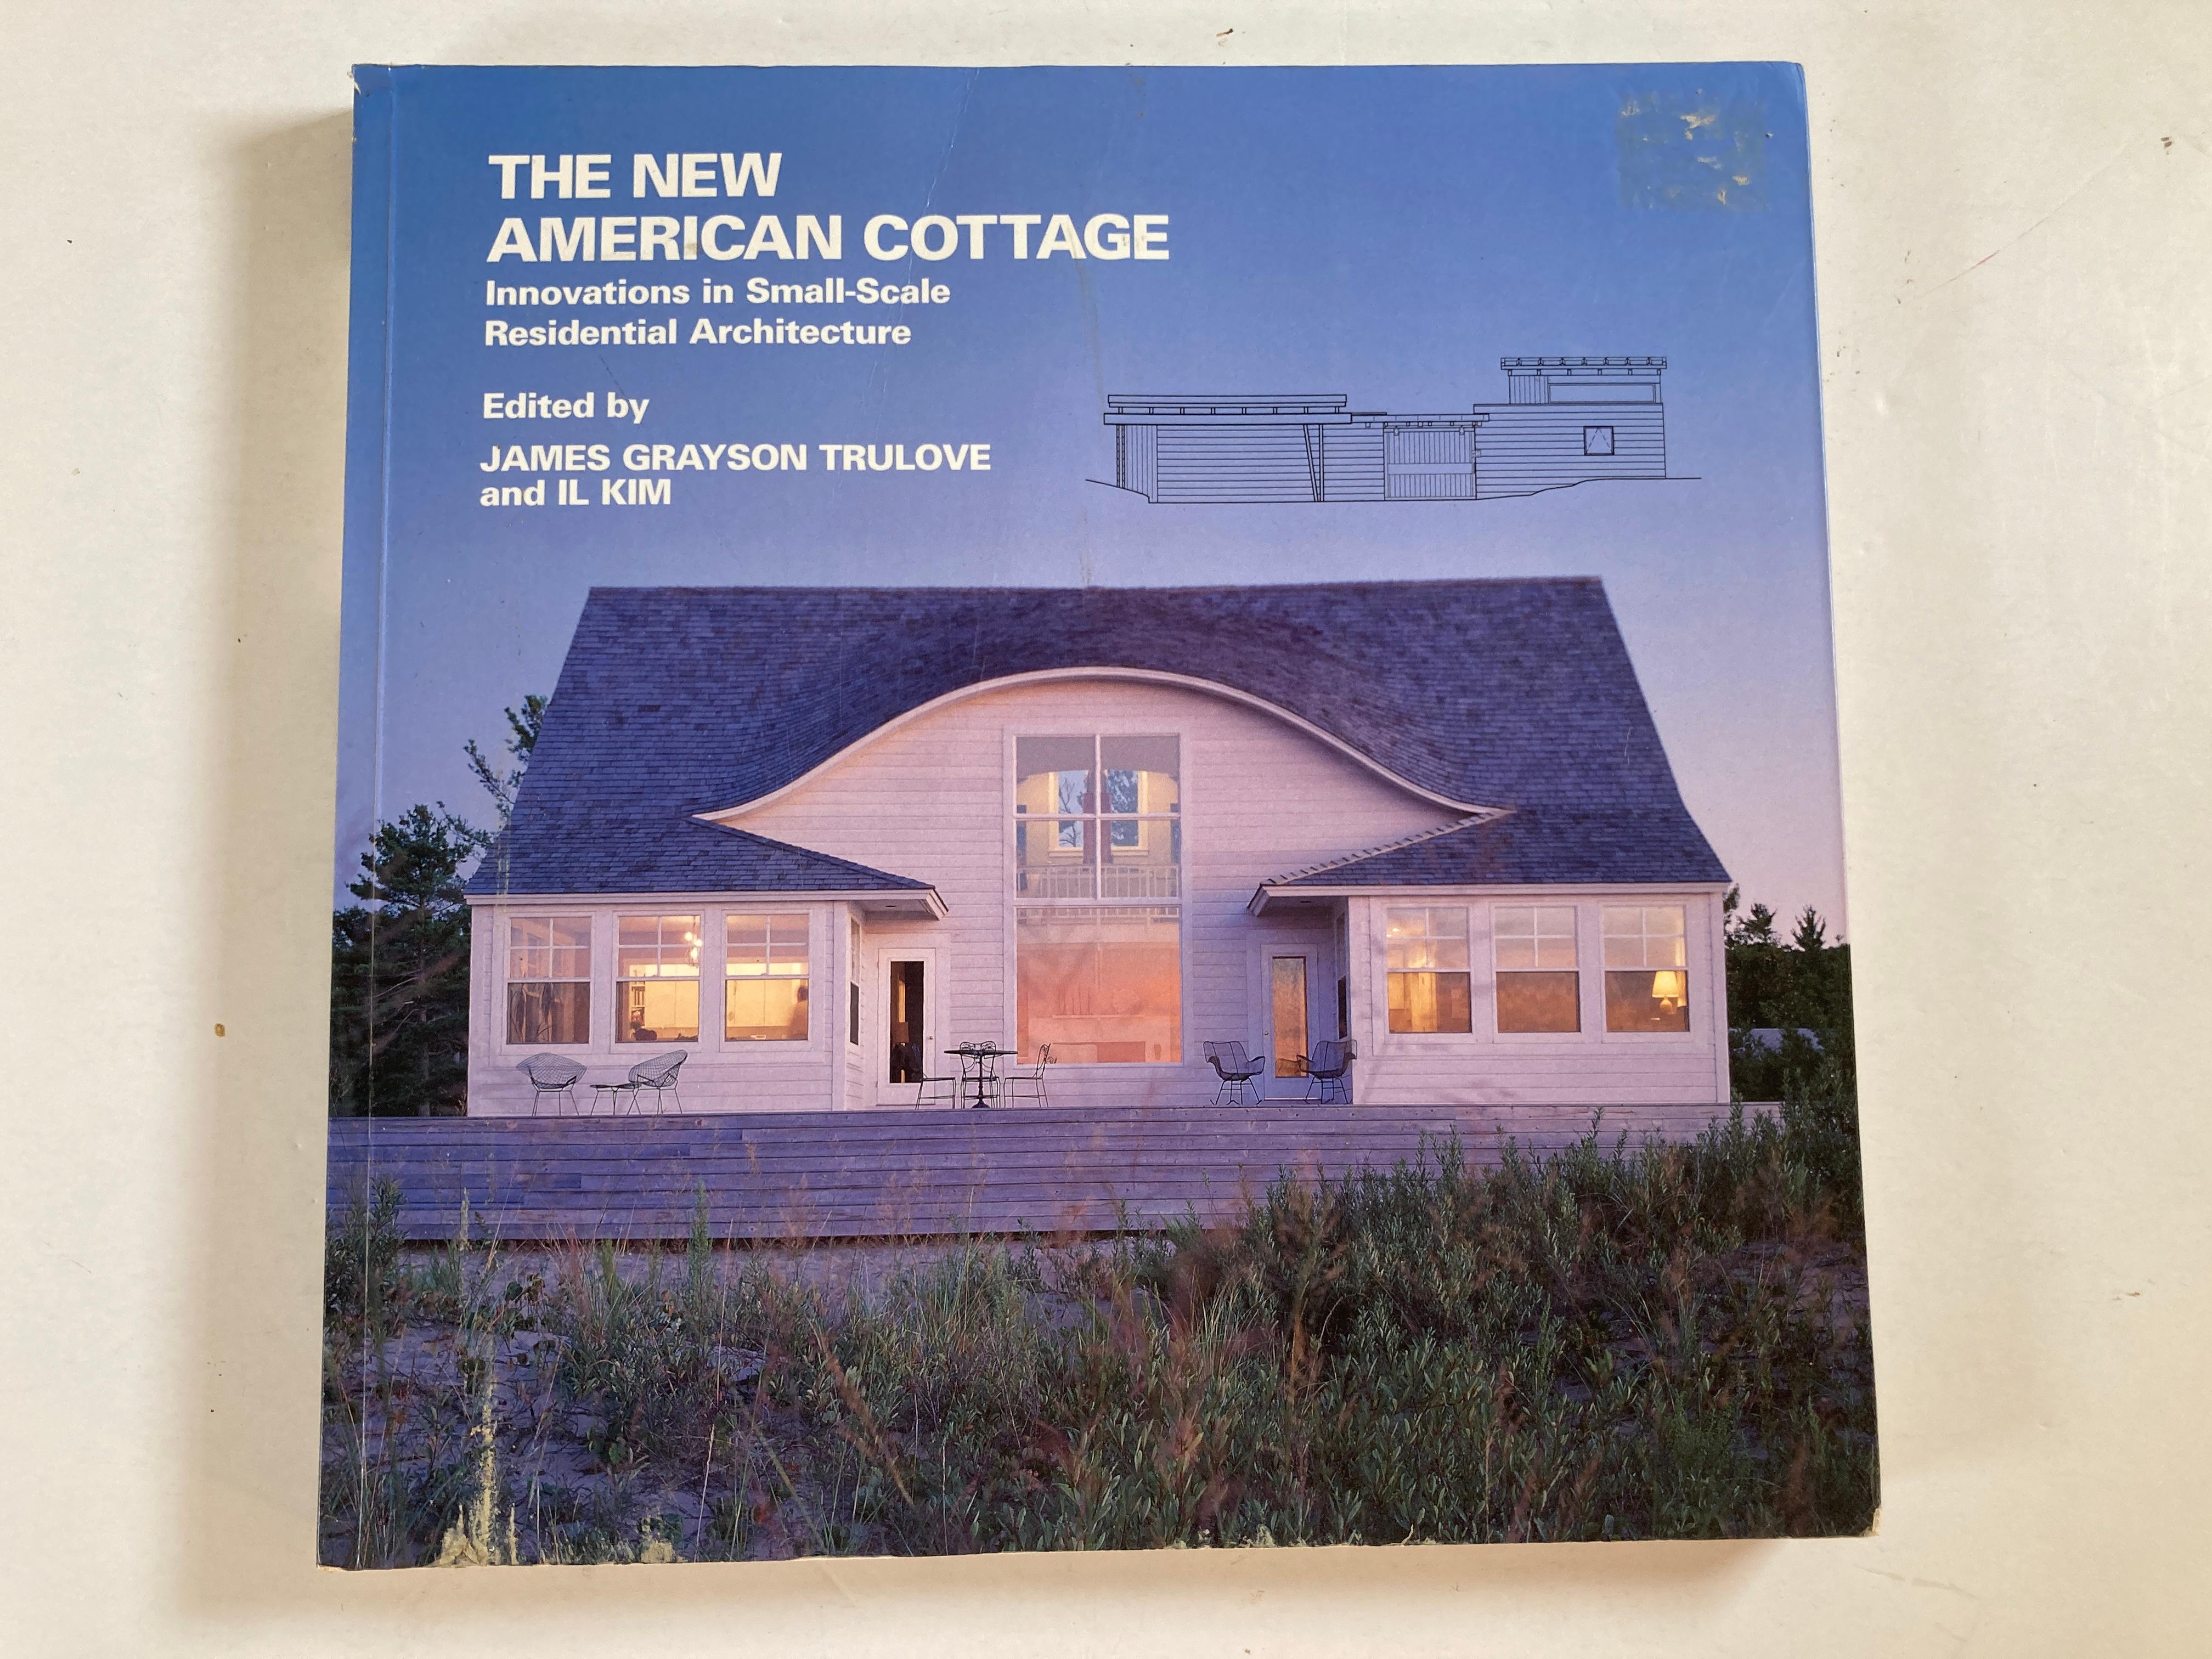 Le nouveau cottage américain : Innovations dans l'architecture résidentielle à petite échelle (New American Architecture)
Synopsis :
Des chefs-d'œuvre architecturaux à petite échelle sont présentés dans ce livre magnifiquement illustré et